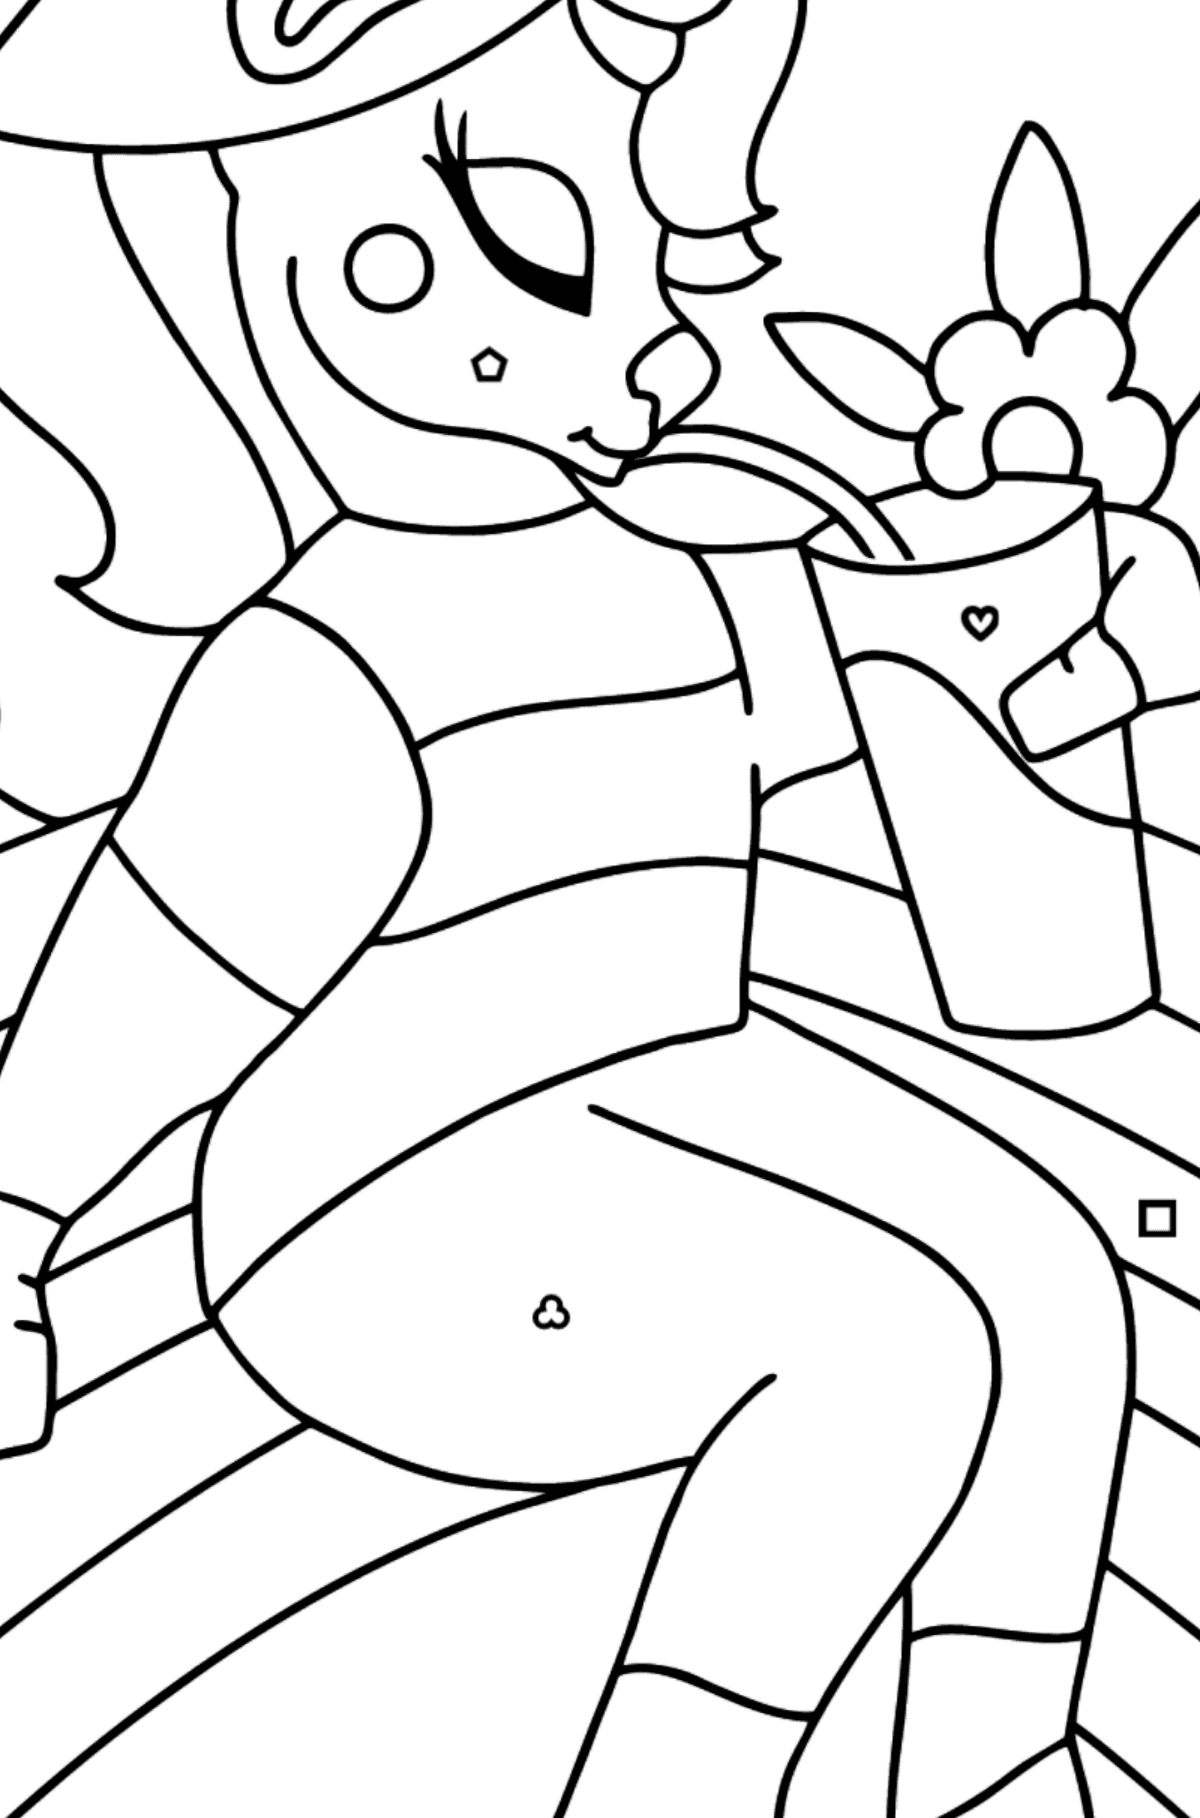 Licorne arc-en-ciel à colorier (simple) - Coloriage par Formes Géométriques pour les Enfants